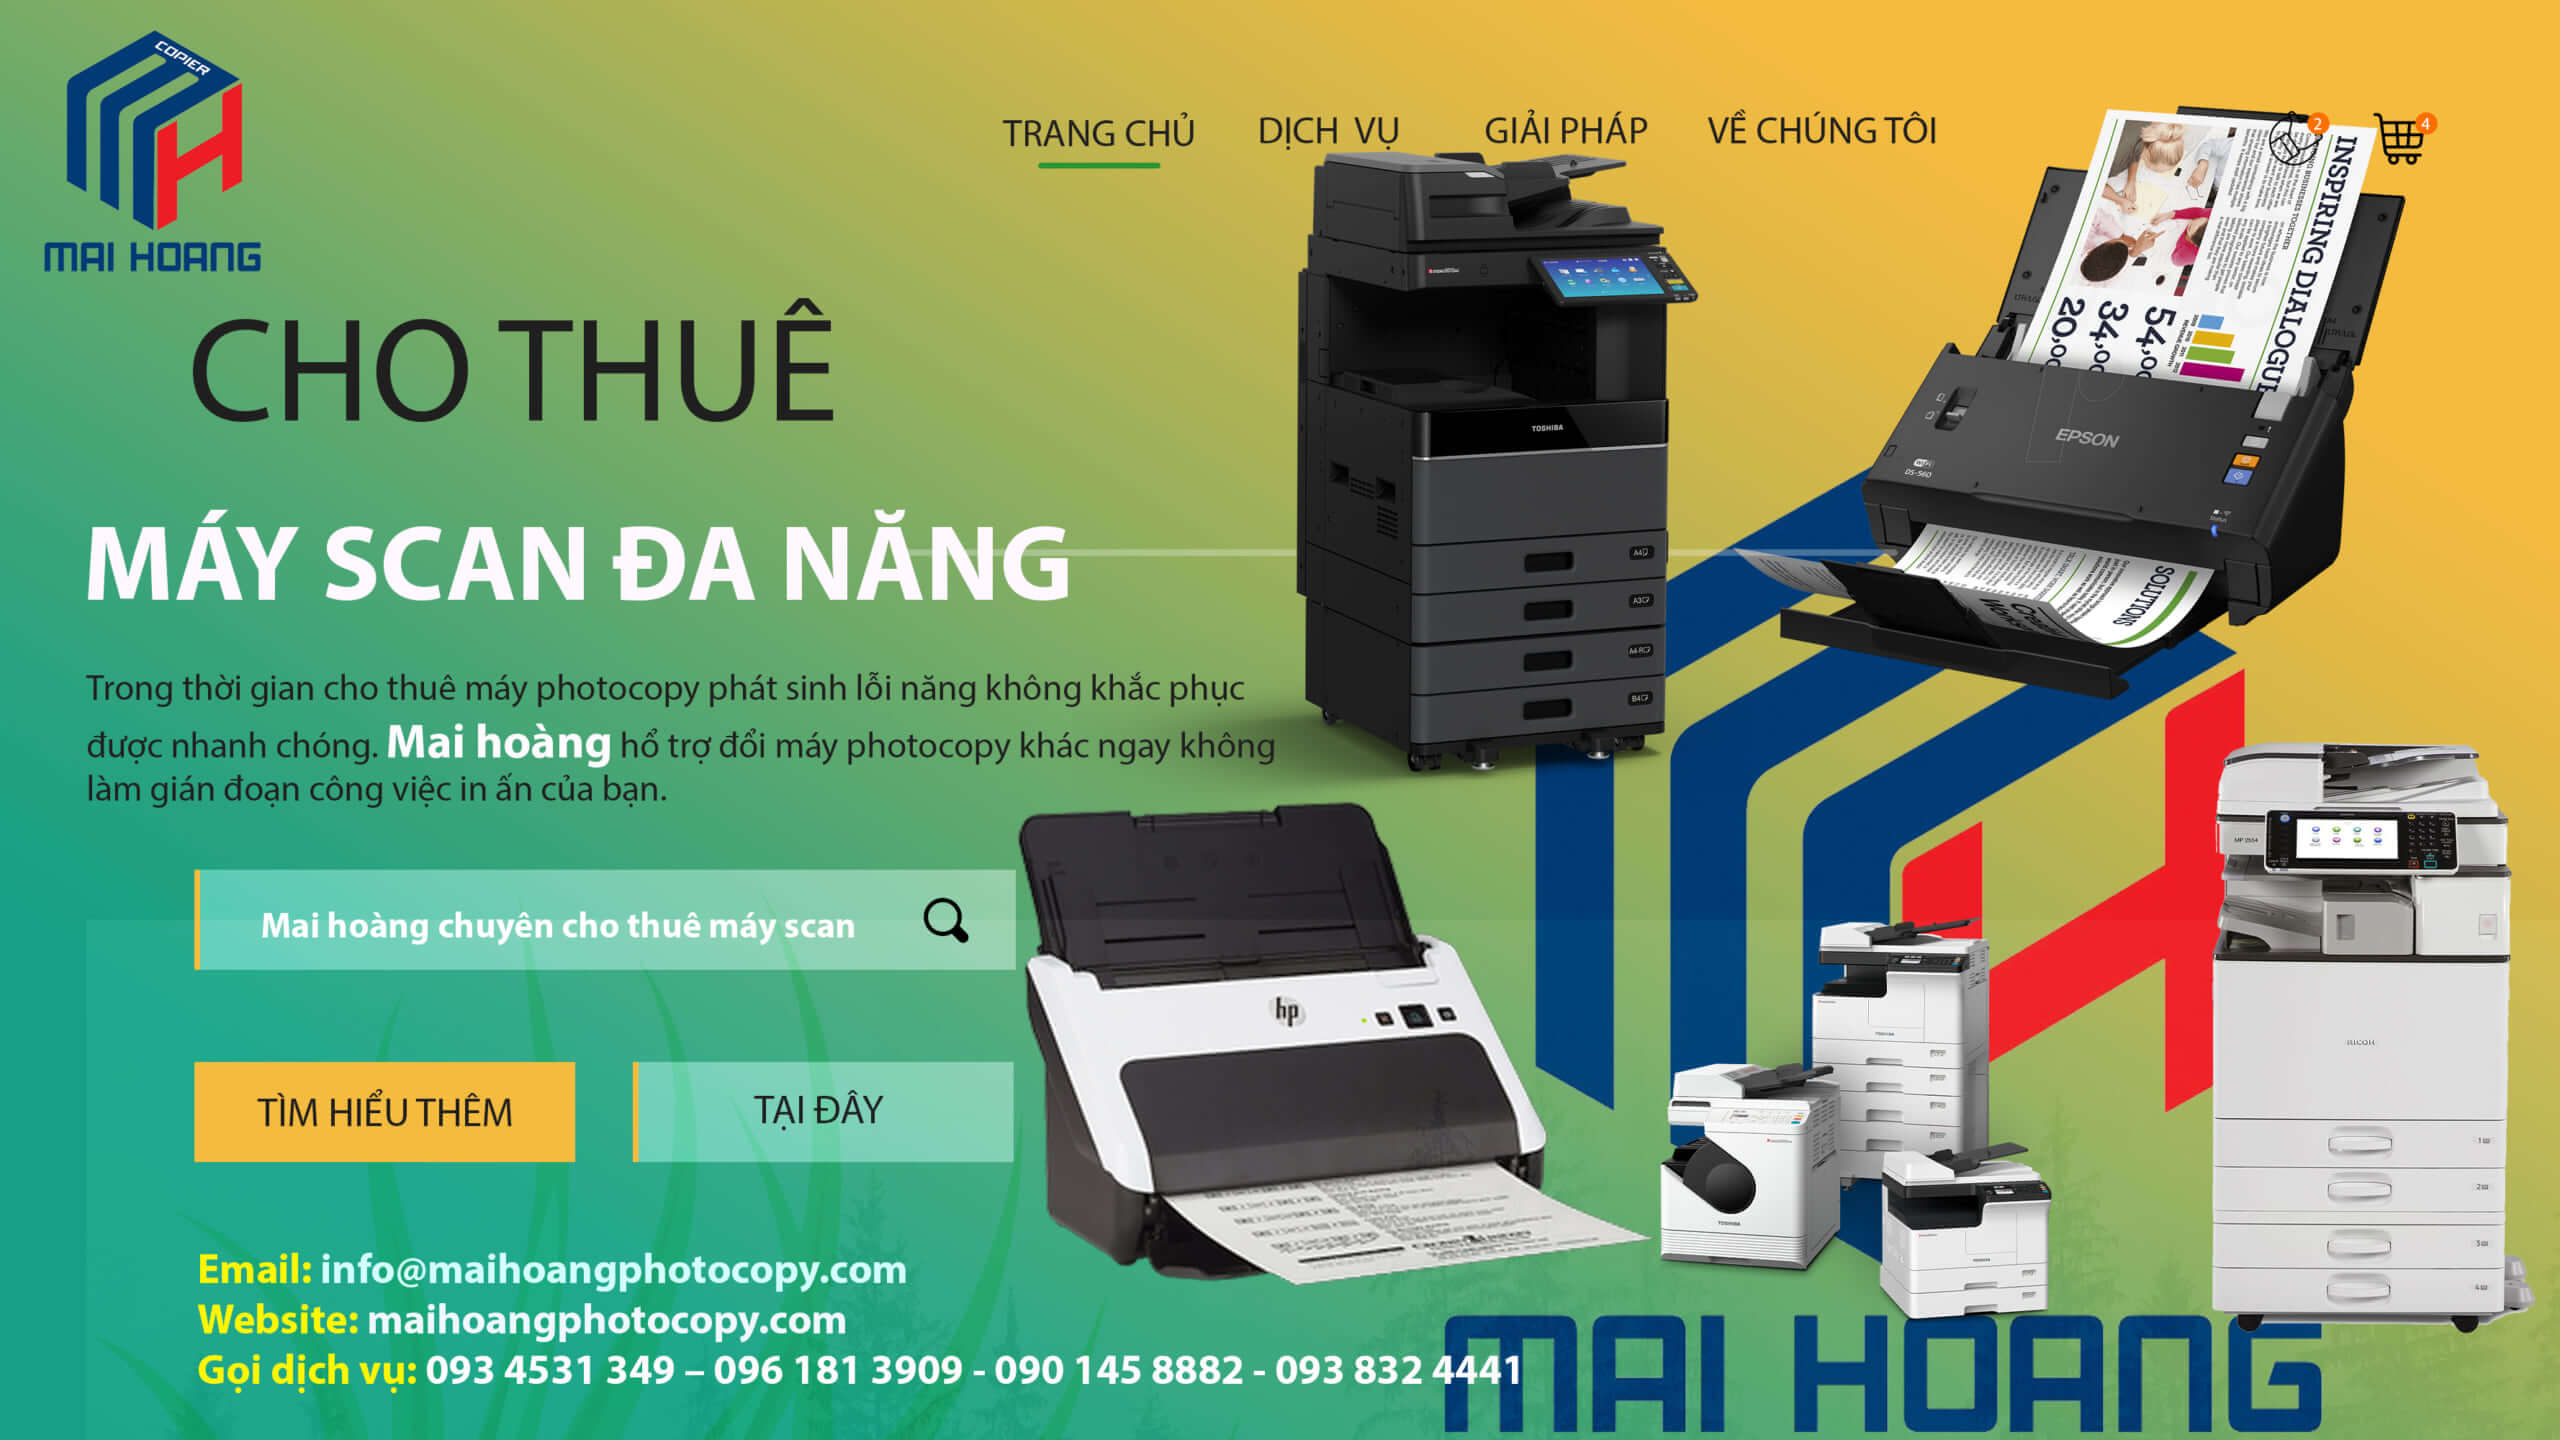 Bảng giá Dịch vụ cho thuê máy Photocopy ở Khu Công Nghiệp Cầu Tràm